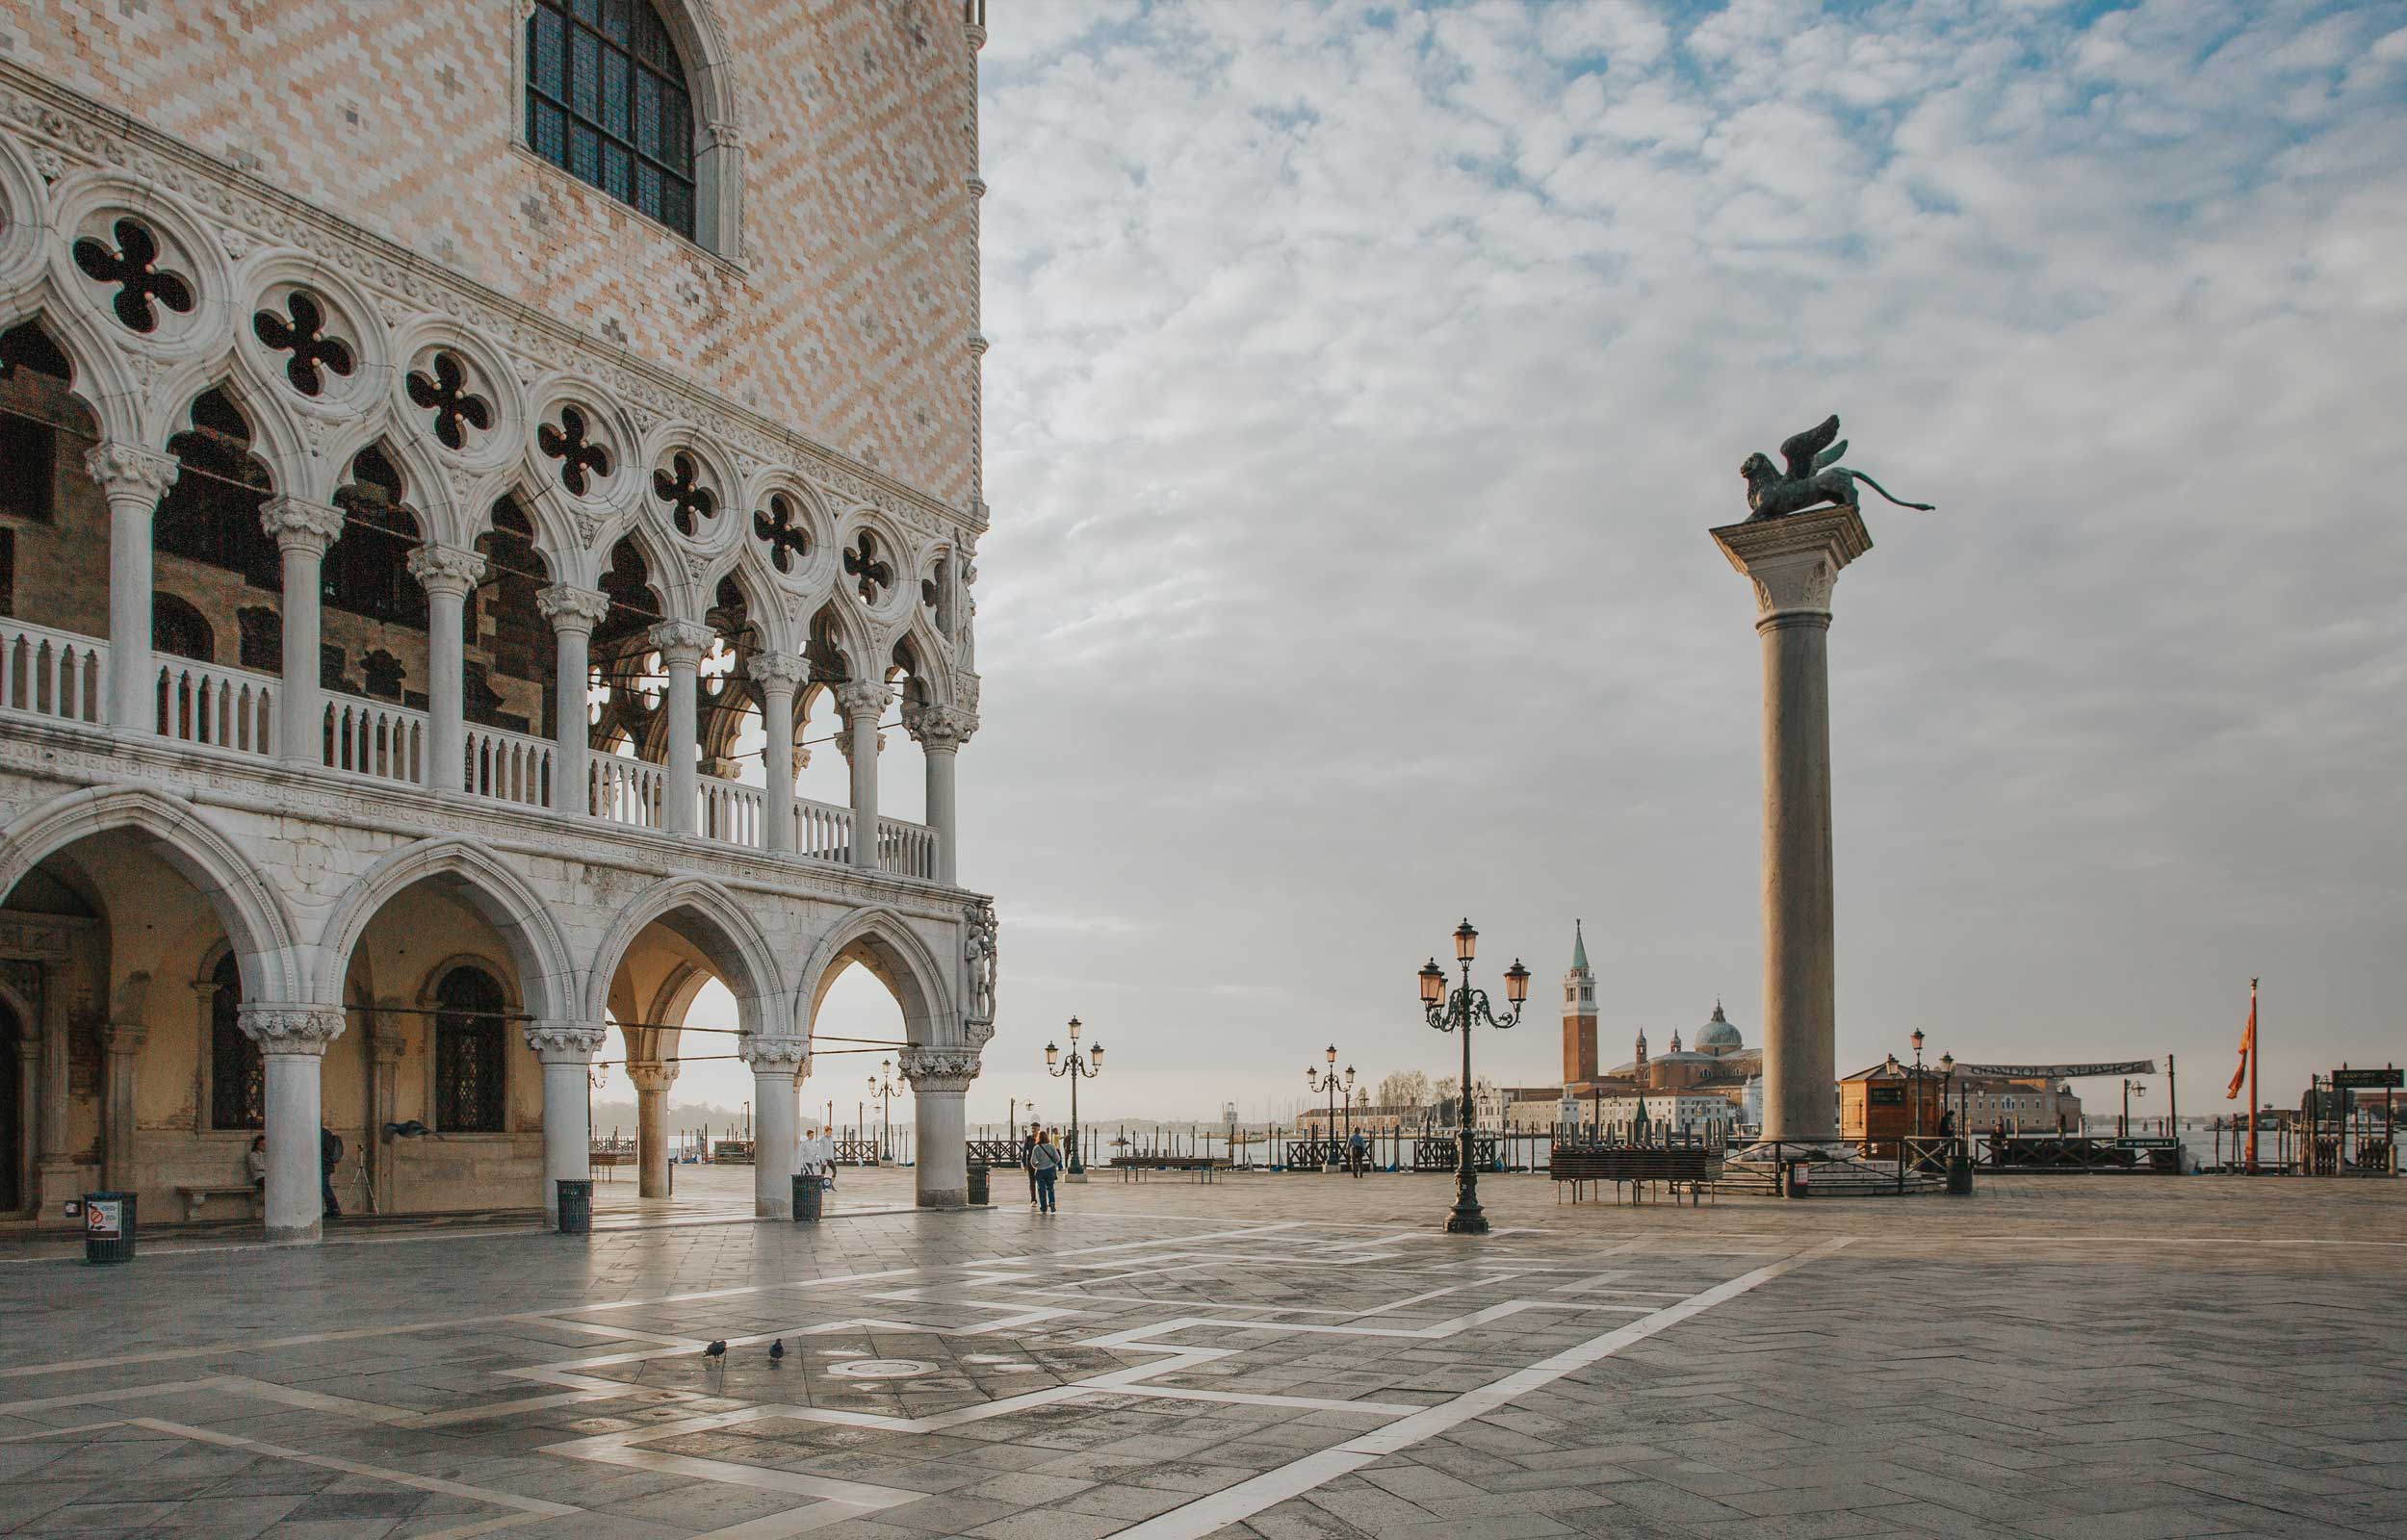 Scopri di più sull'articolo L’arte a Venezia, tra palazzi, musei e chiese